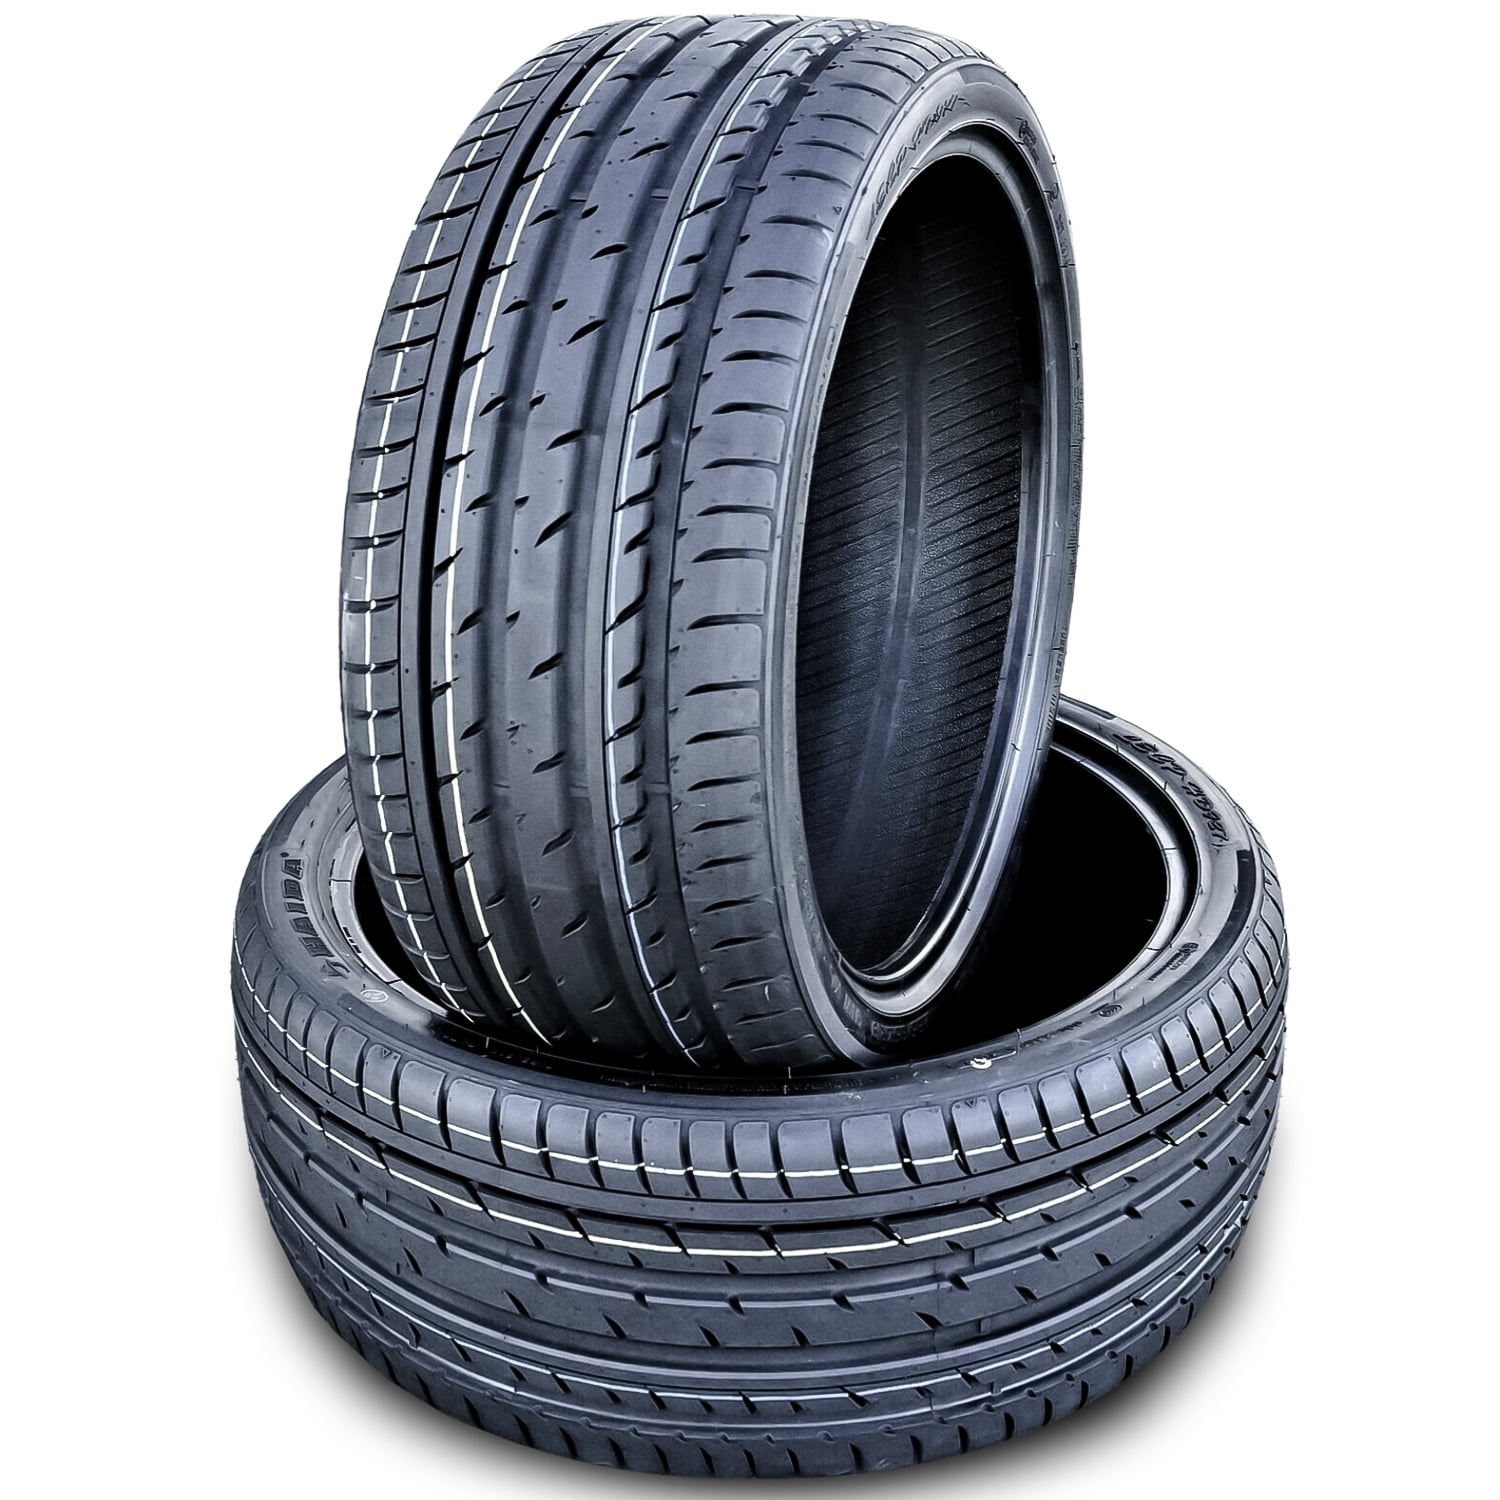 Haida LECP HD927 275/25ZR26 275/25R26 98W High Performance Tire 